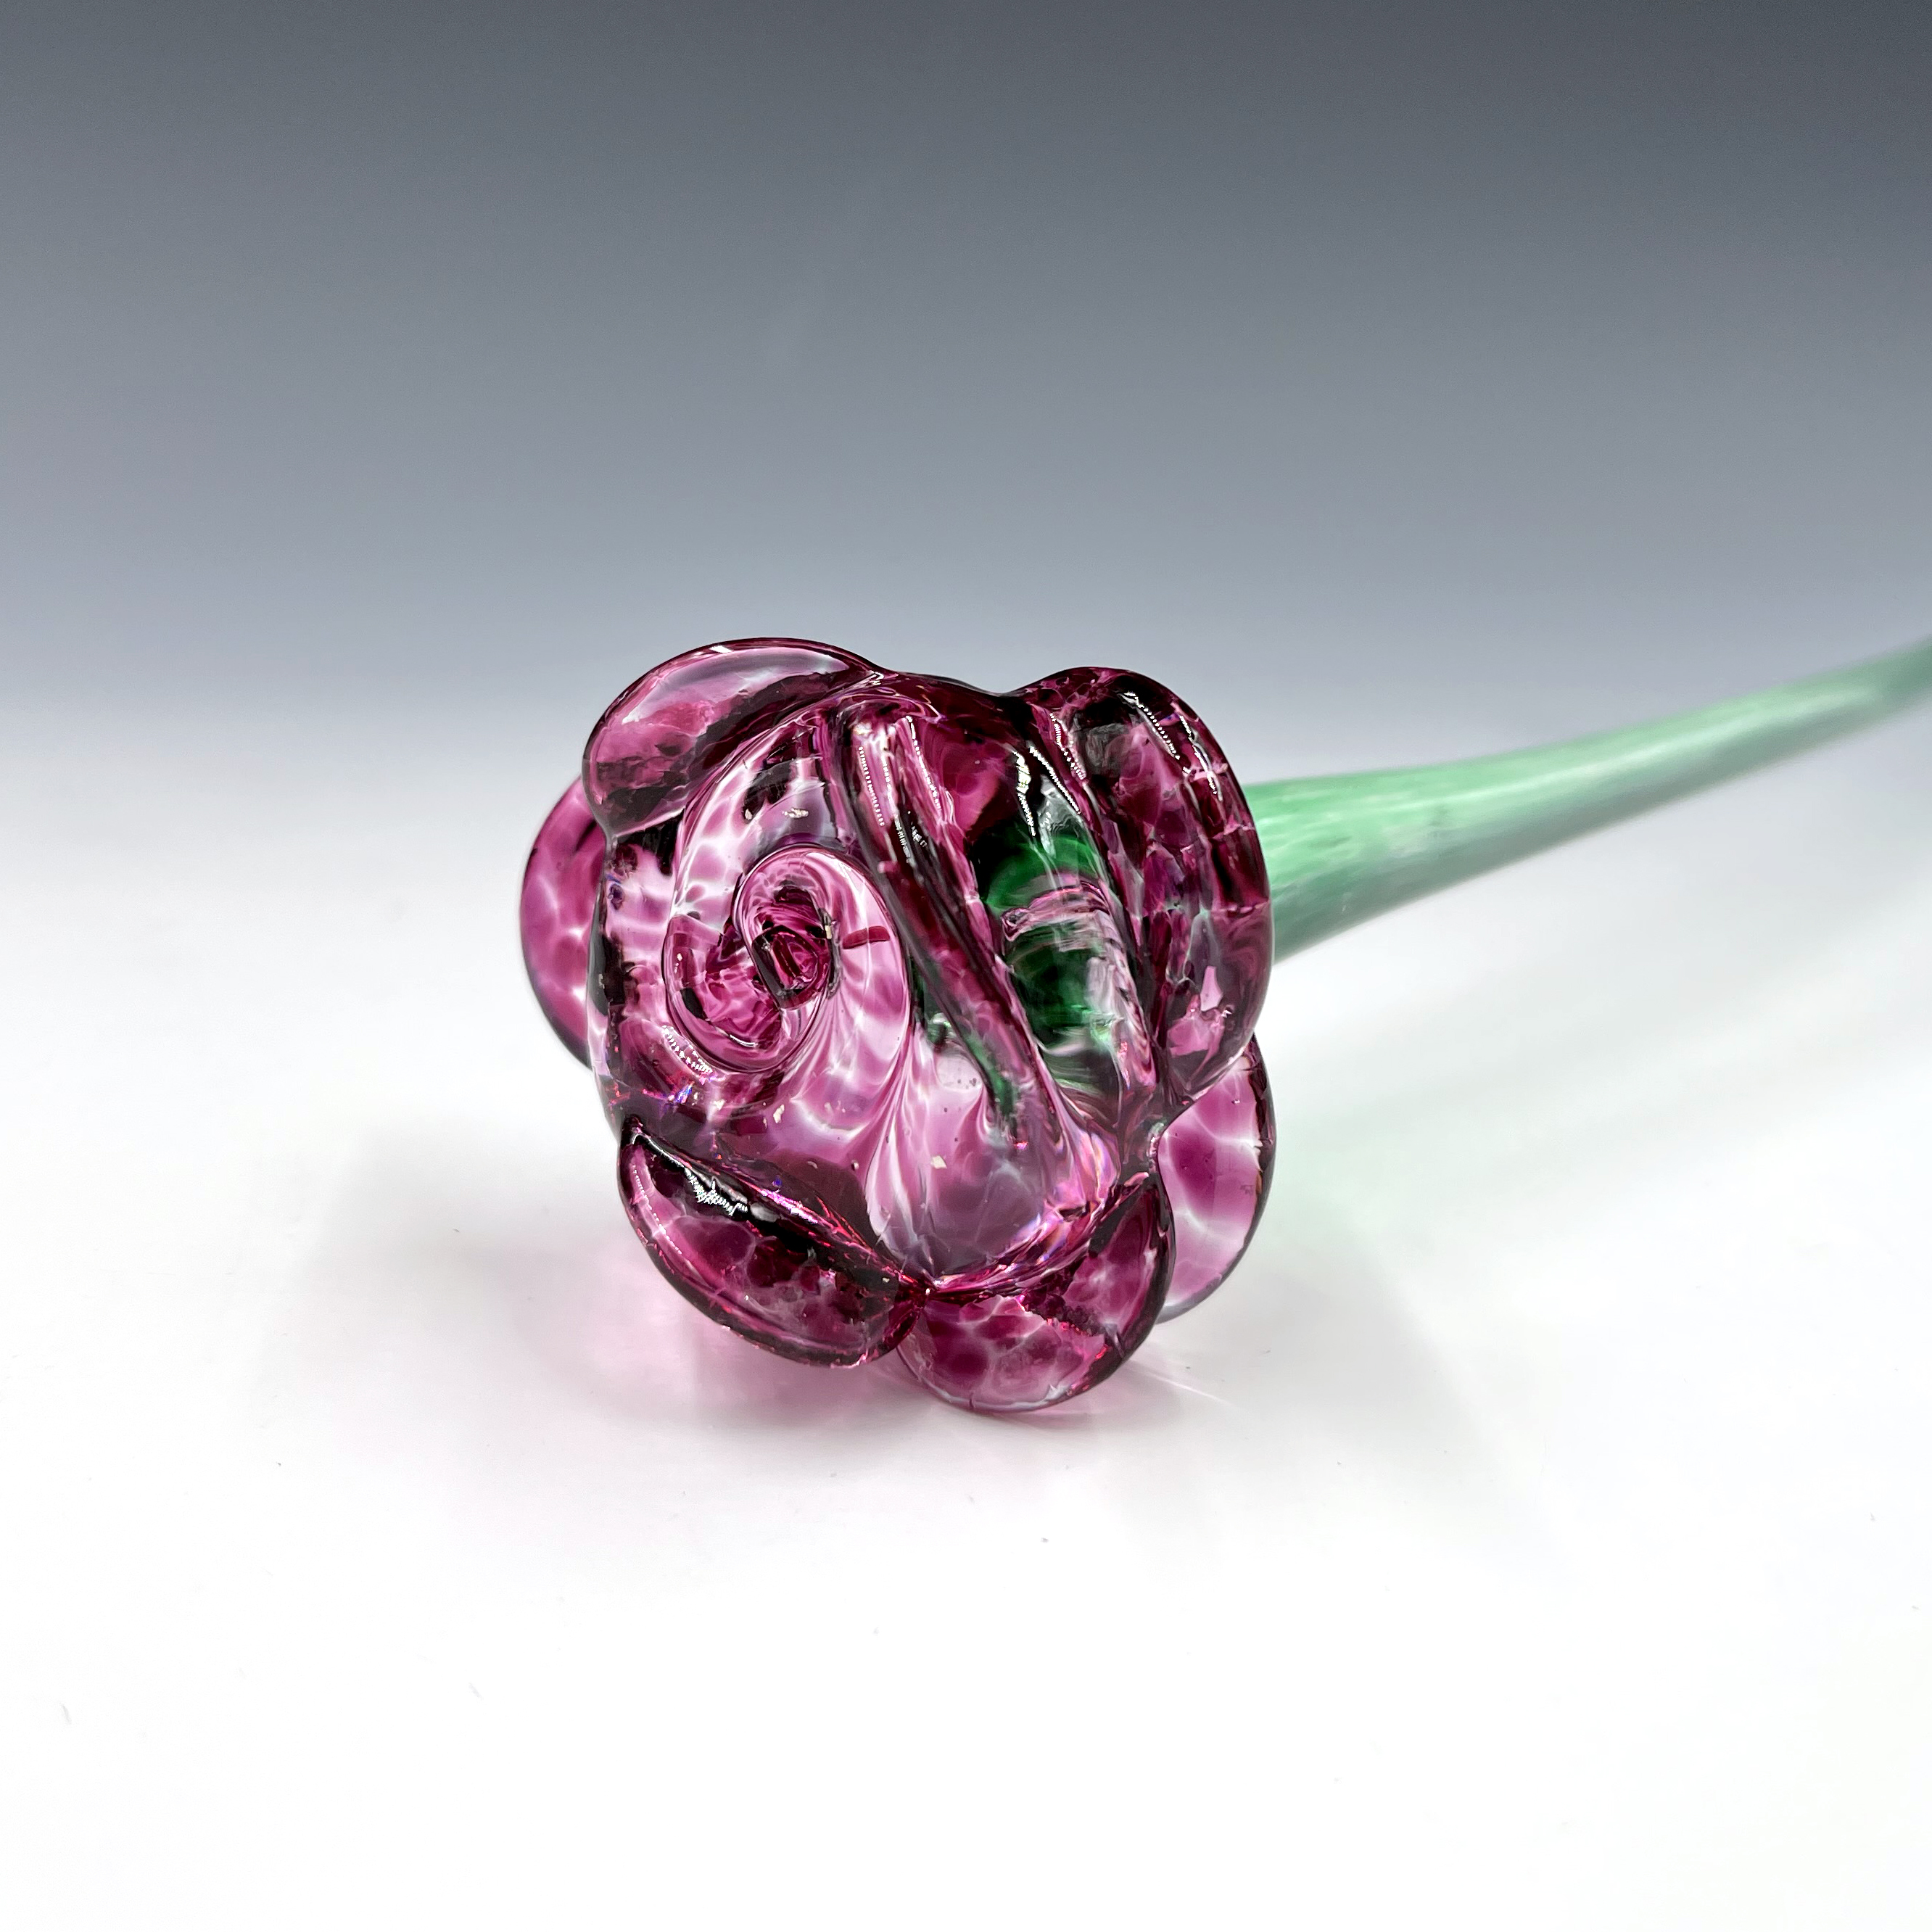 Long Stem Glass Roses • Lake Superior Art Glass